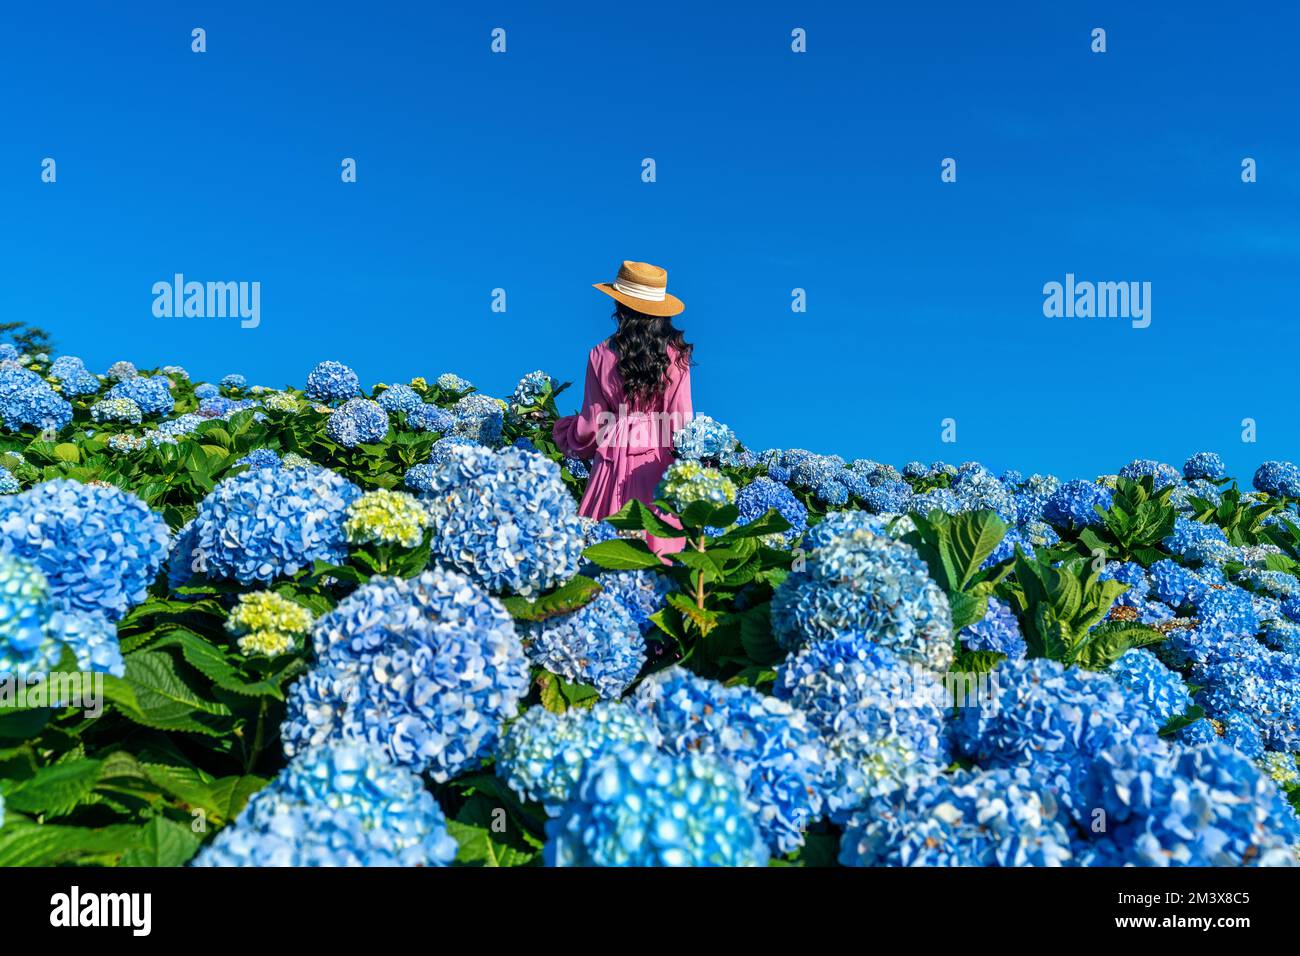 Belle fille appréciant fleurs d'hortensias bleu en fleurs dans le jardin. Banque D'Images